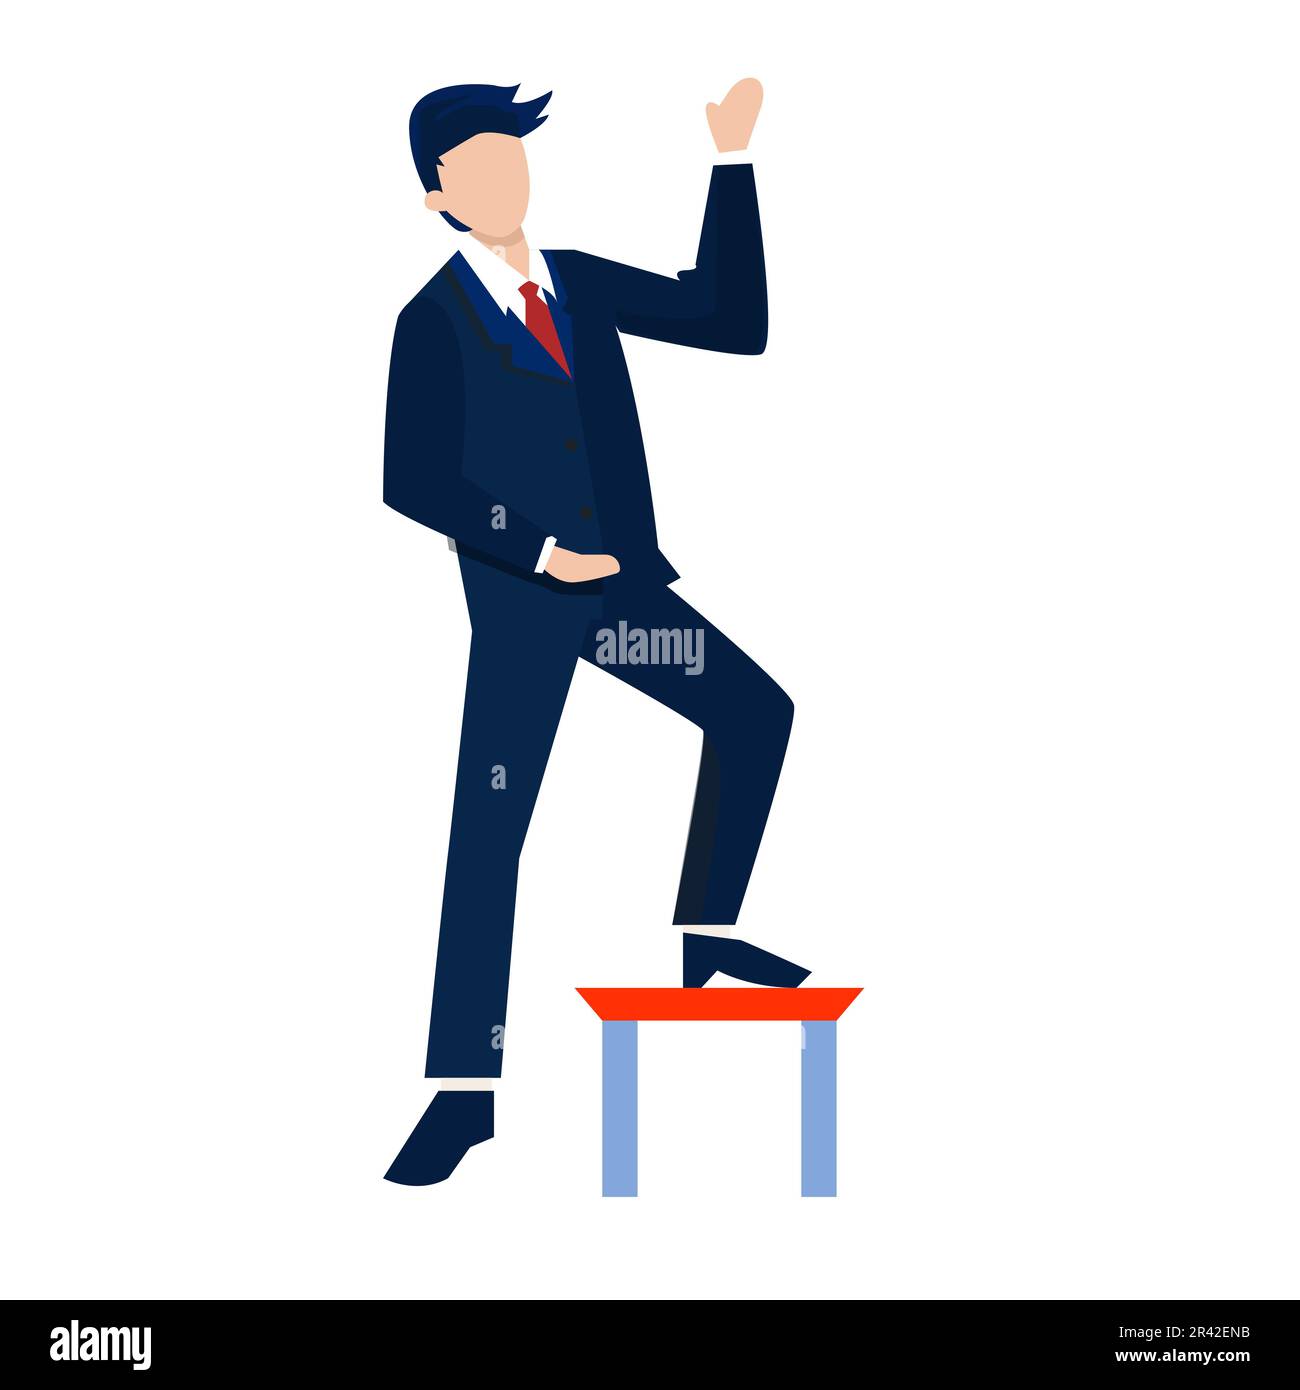 Un homme d'affaires espiègle se tenant sur un podium. Illustration vectorielle de style plat. Illustration de Vecteur